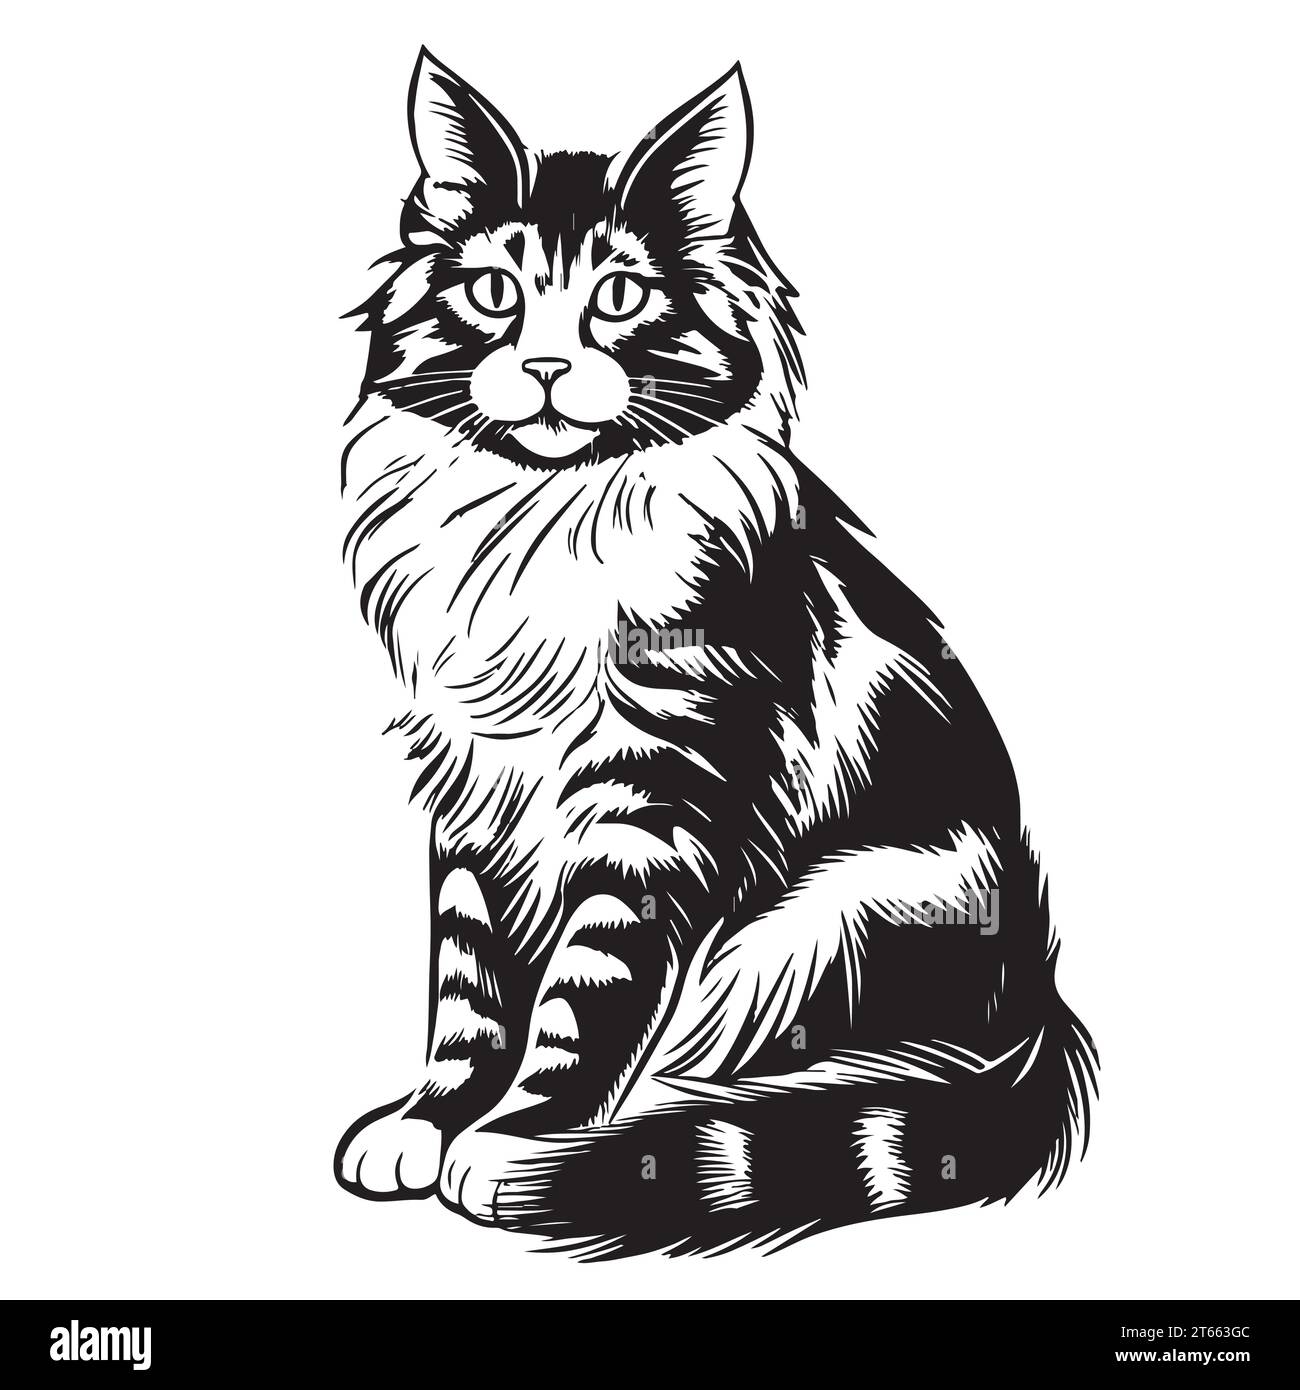 Dessin de chat moelleux illustration vectorielle dessinée à la main Illustration de Vecteur